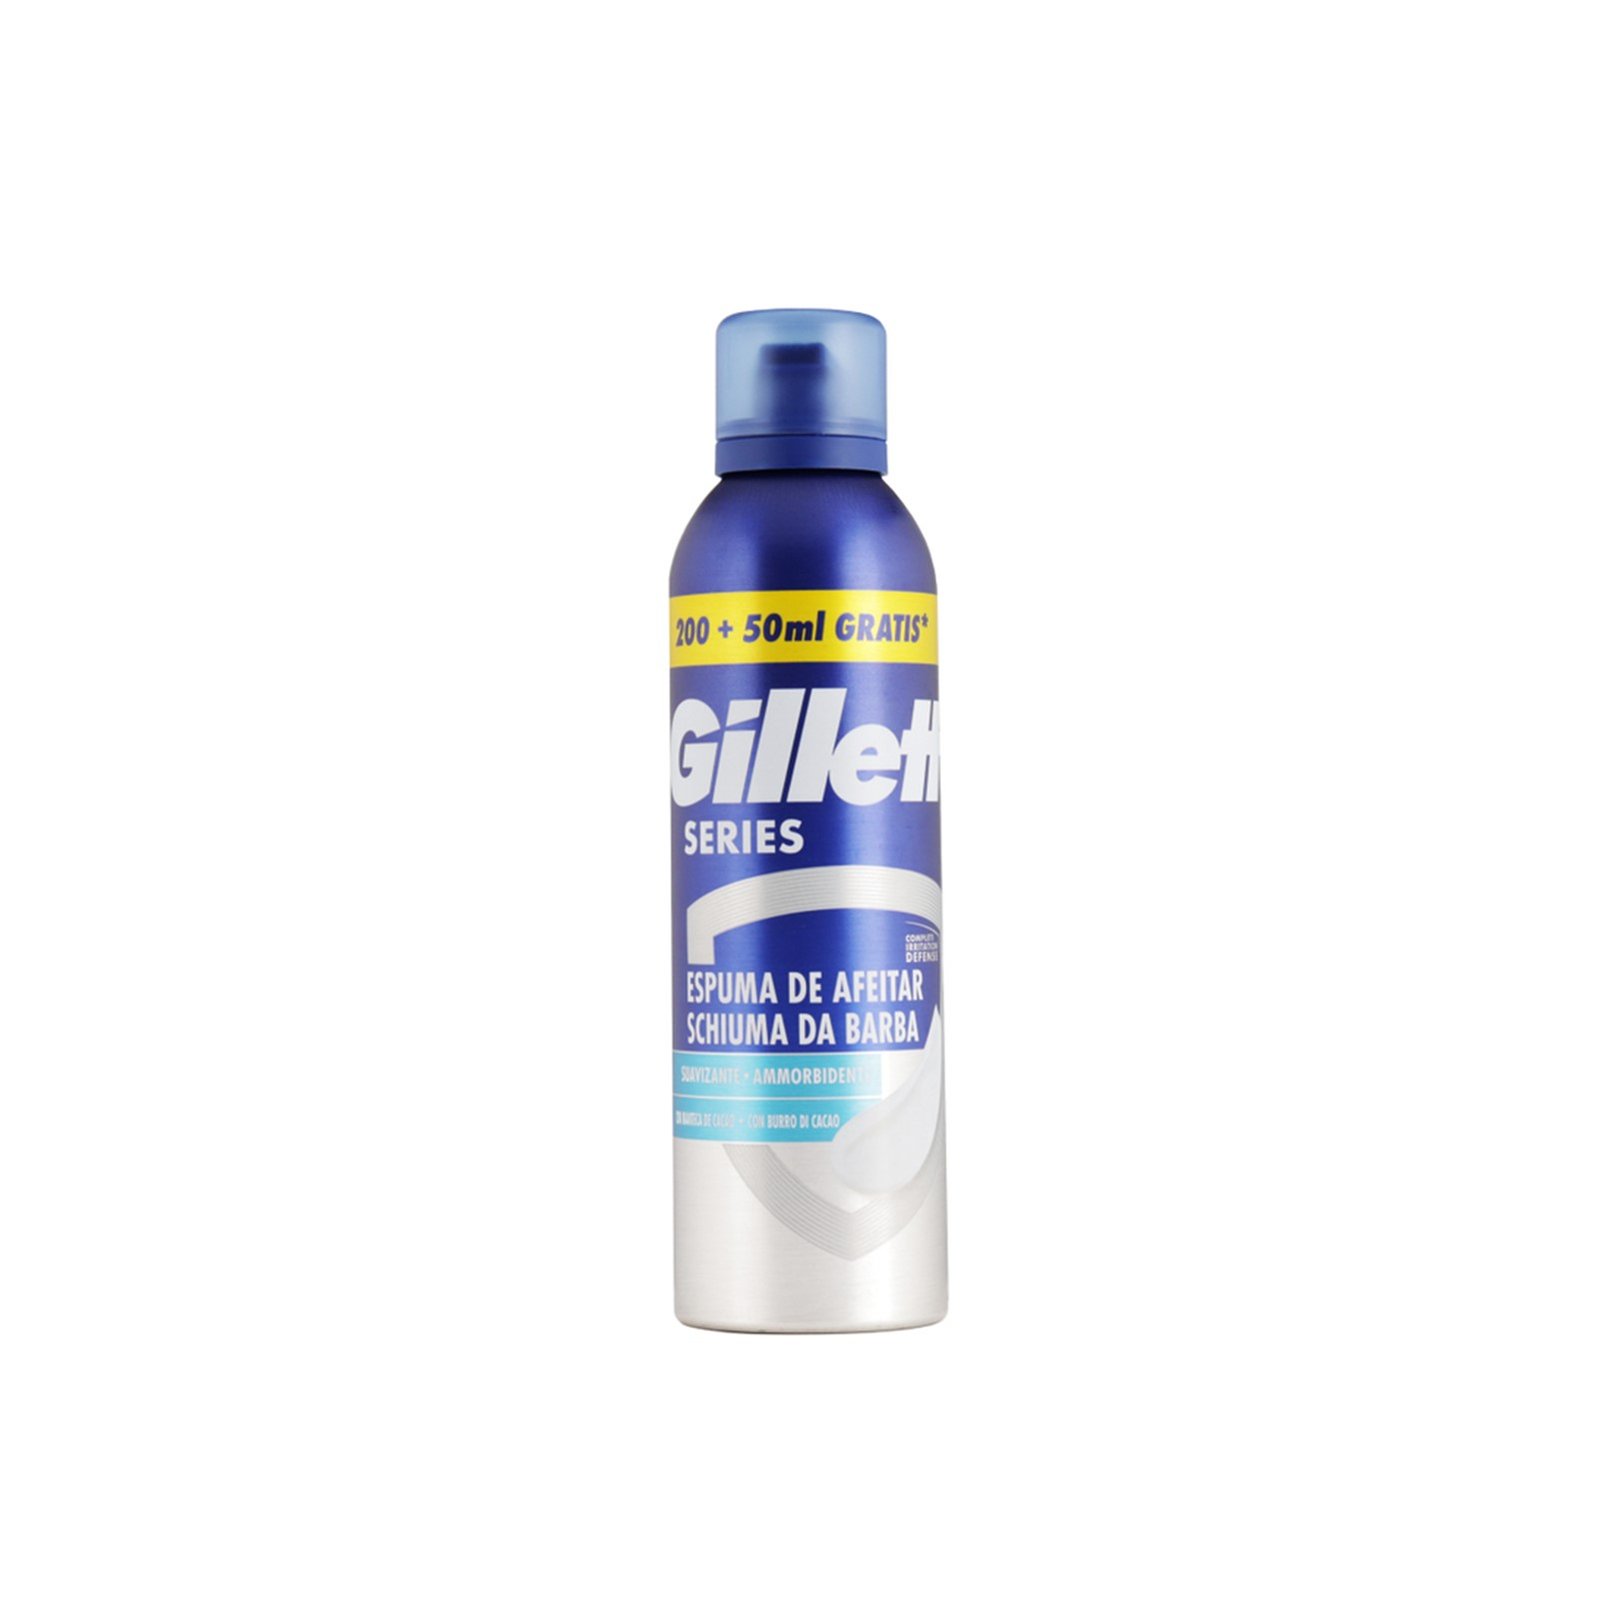 Gillette Series Smoothing Shaving Foam 250ml